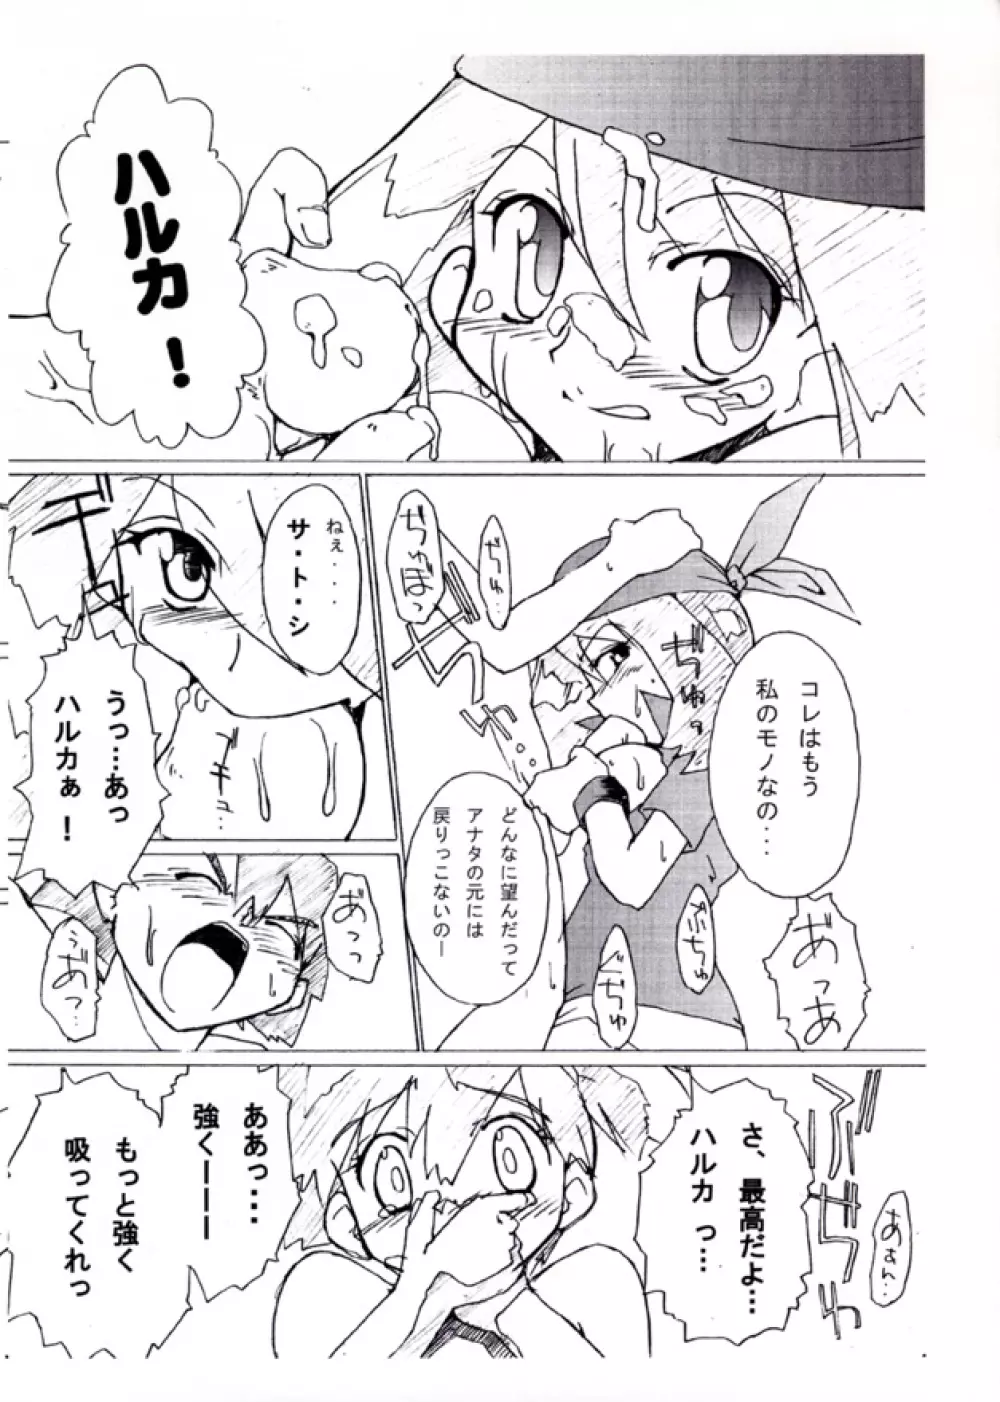 KASUMIX XPLOSION Kasumi Comic part5 29ページ